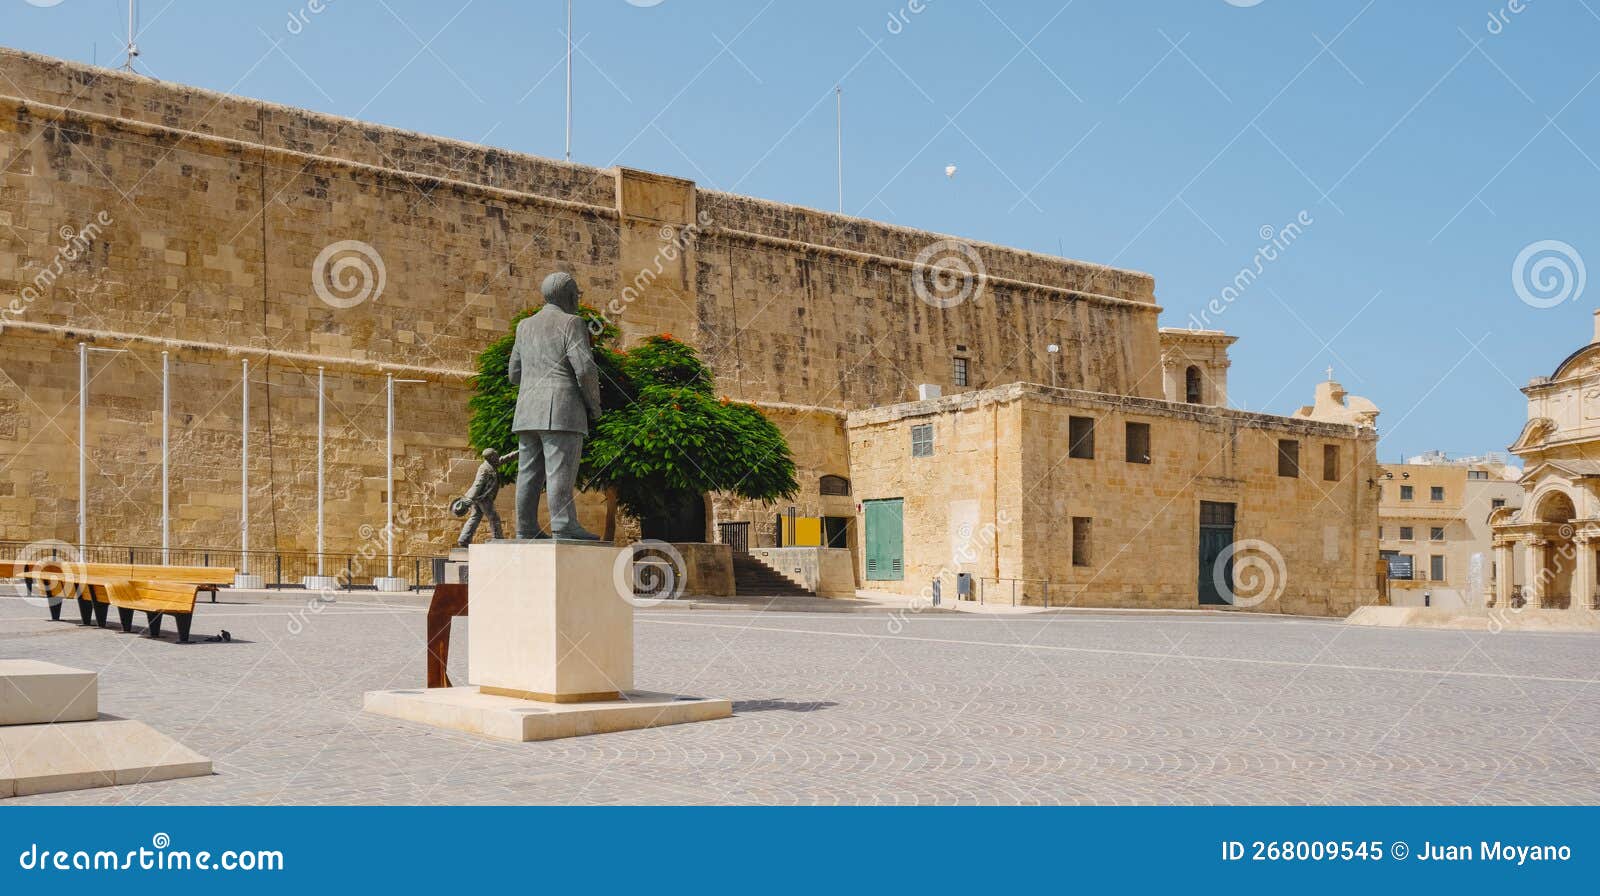 castille square in valletta, malta, panoramic format